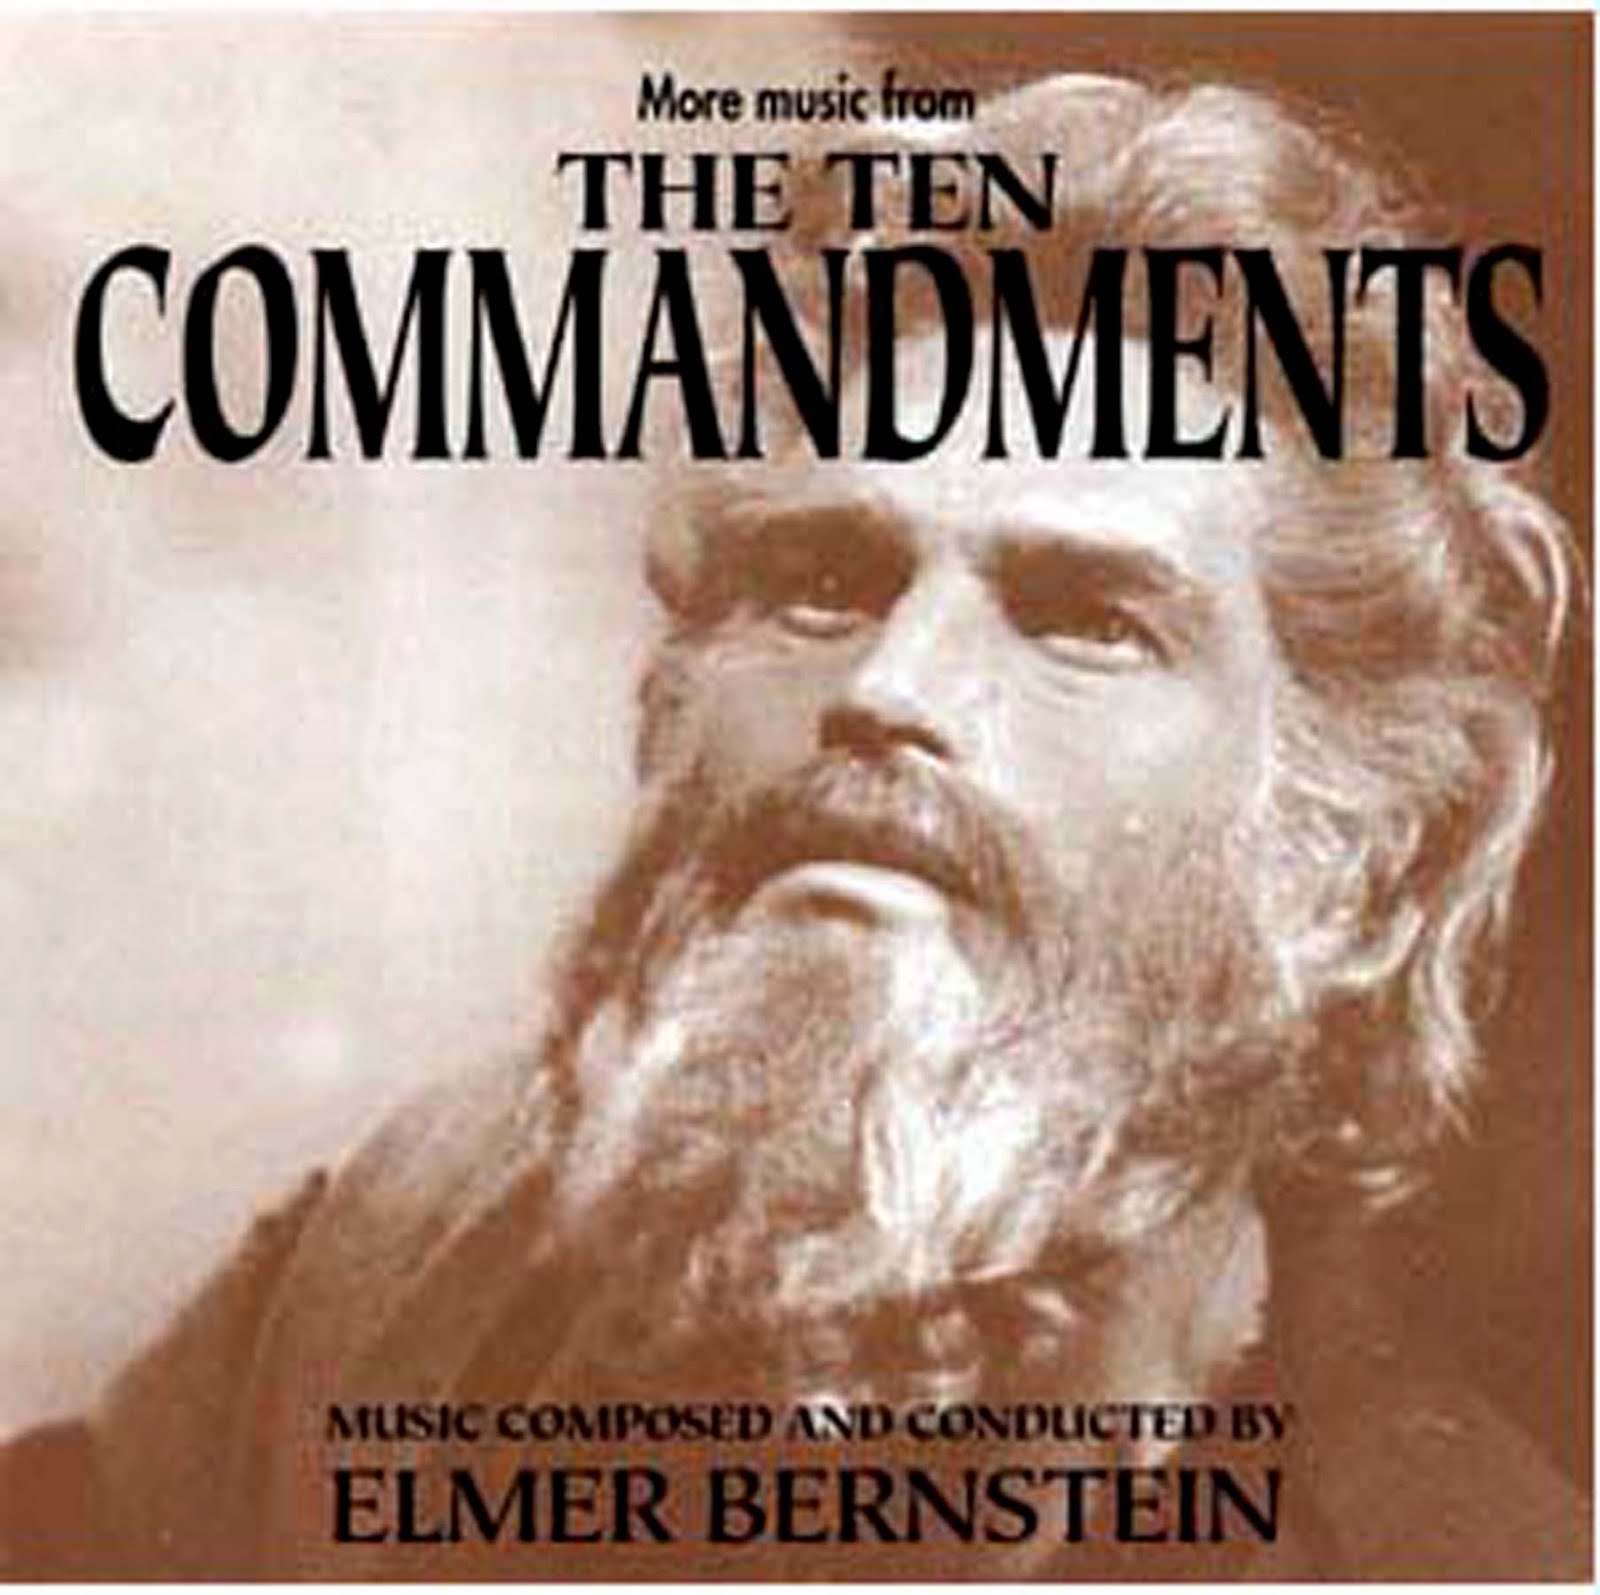 http://3.bp.blogspot.com/-4PZ7UwbV5-w/TbTcPWYHTZI/AAAAAAAAGq0/JfO5u38-i6M/s1600/Soundtrack_The_Ten_Commandments-front.jpg